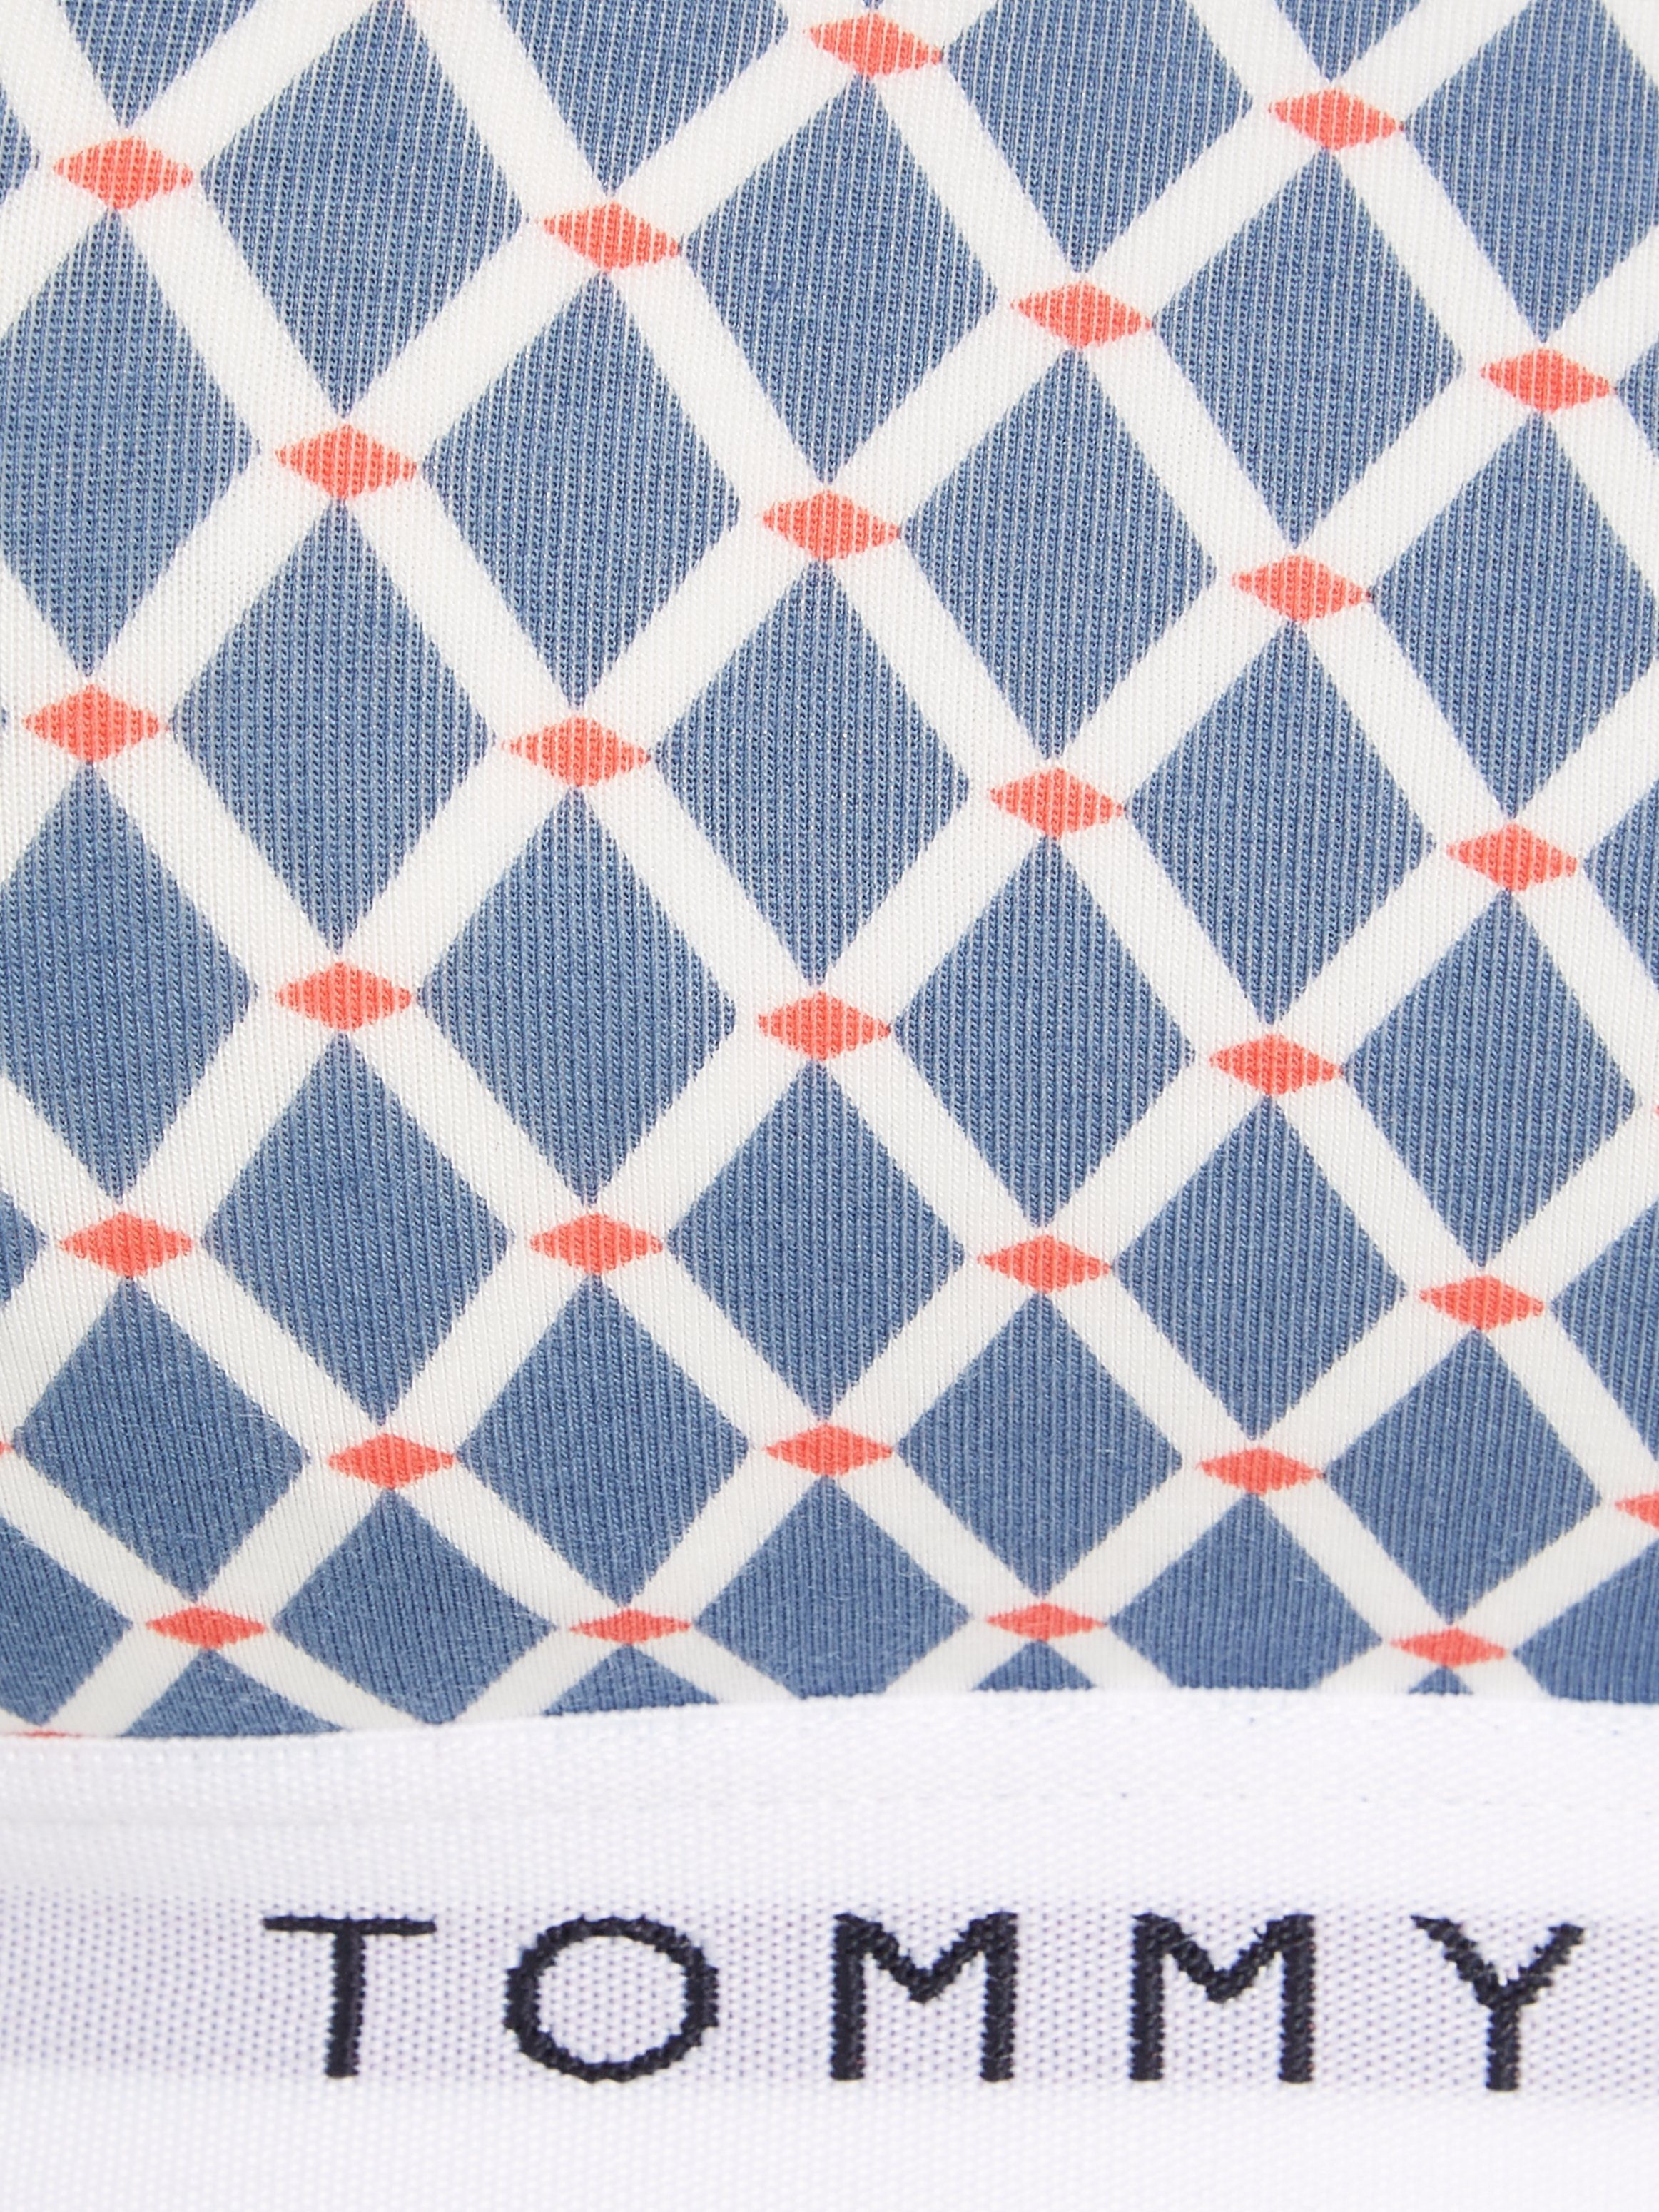 Tommy Mini_Argyle_Iron_Blue Bralette PRINT Print mit Underwear Hilfiger BRALETTE